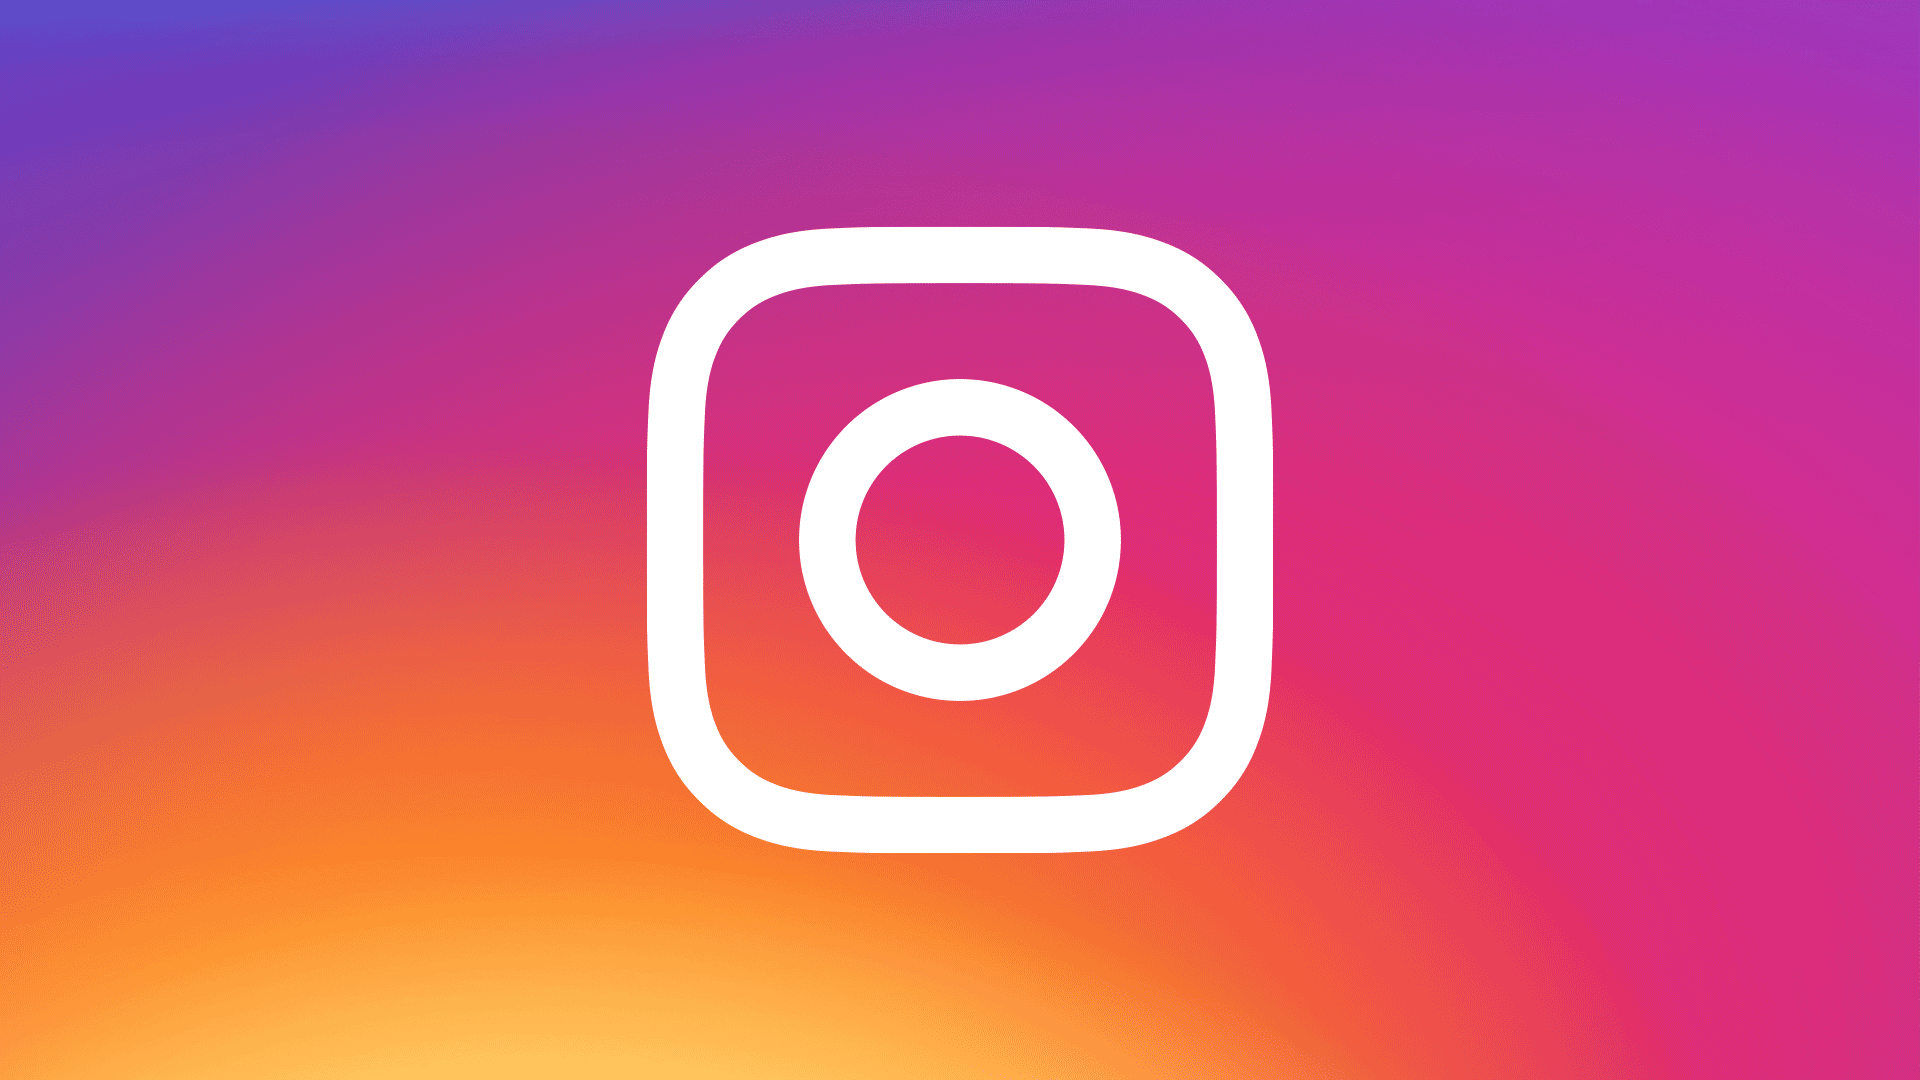 Instagram trả tiền cho các nhà xuất bản chia sẻ những bức ảnh đẹp để đăng lên mạng. Hãy xem ngay bức ảnh này để khám phá các cơ hội tiếp cận khán giả và tăng doanh số bán hàng của bạn trên Instagram.